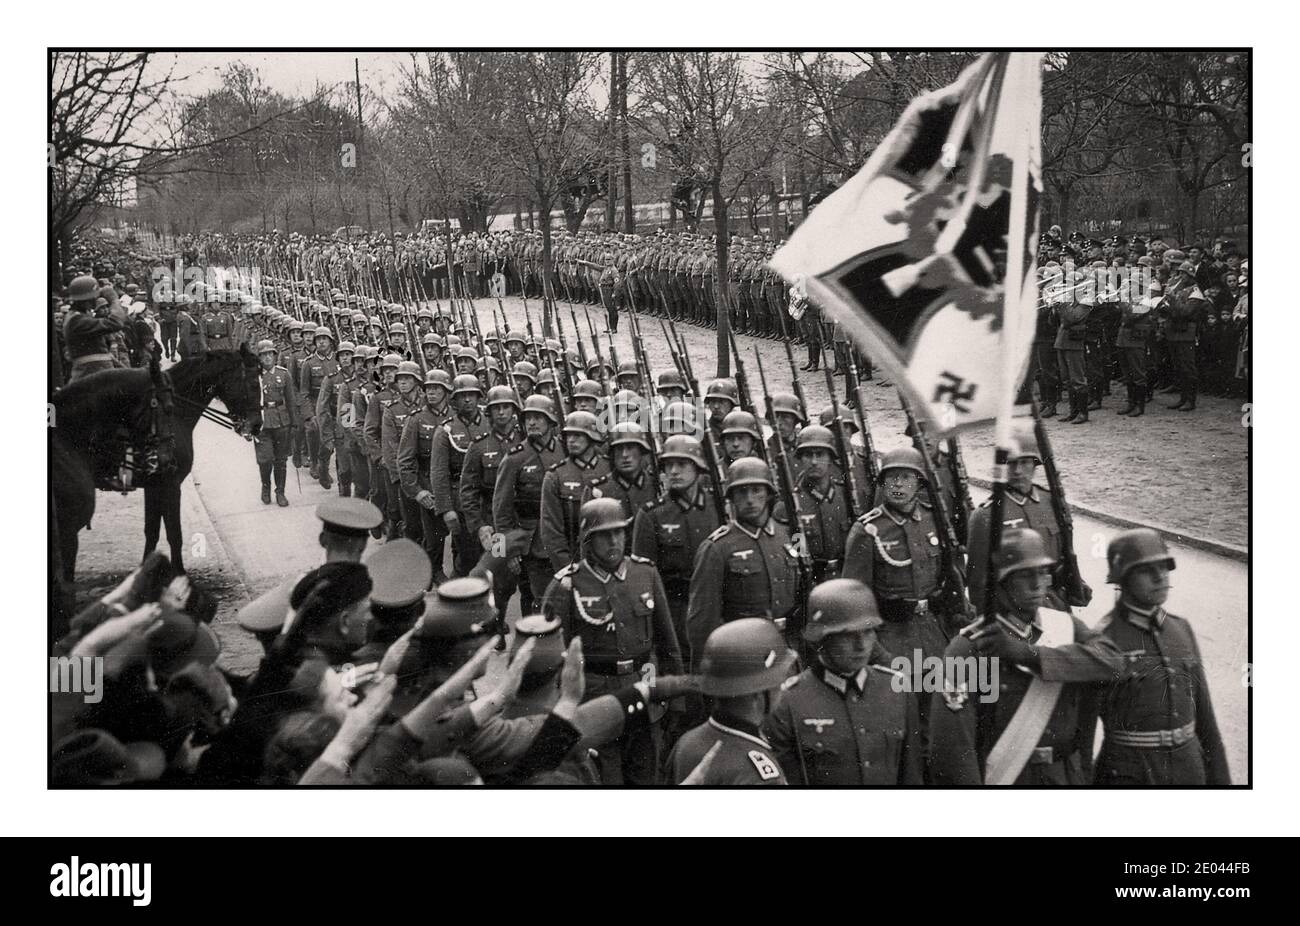 1940 Marschparade der Wehrmachtsarmee, mit Regimentsfahne vorne. Militärkapelle, die dahinter spielt. Zuschauer, die Heil Hitler geben, grüßen im Vordergrund. Stockfoto